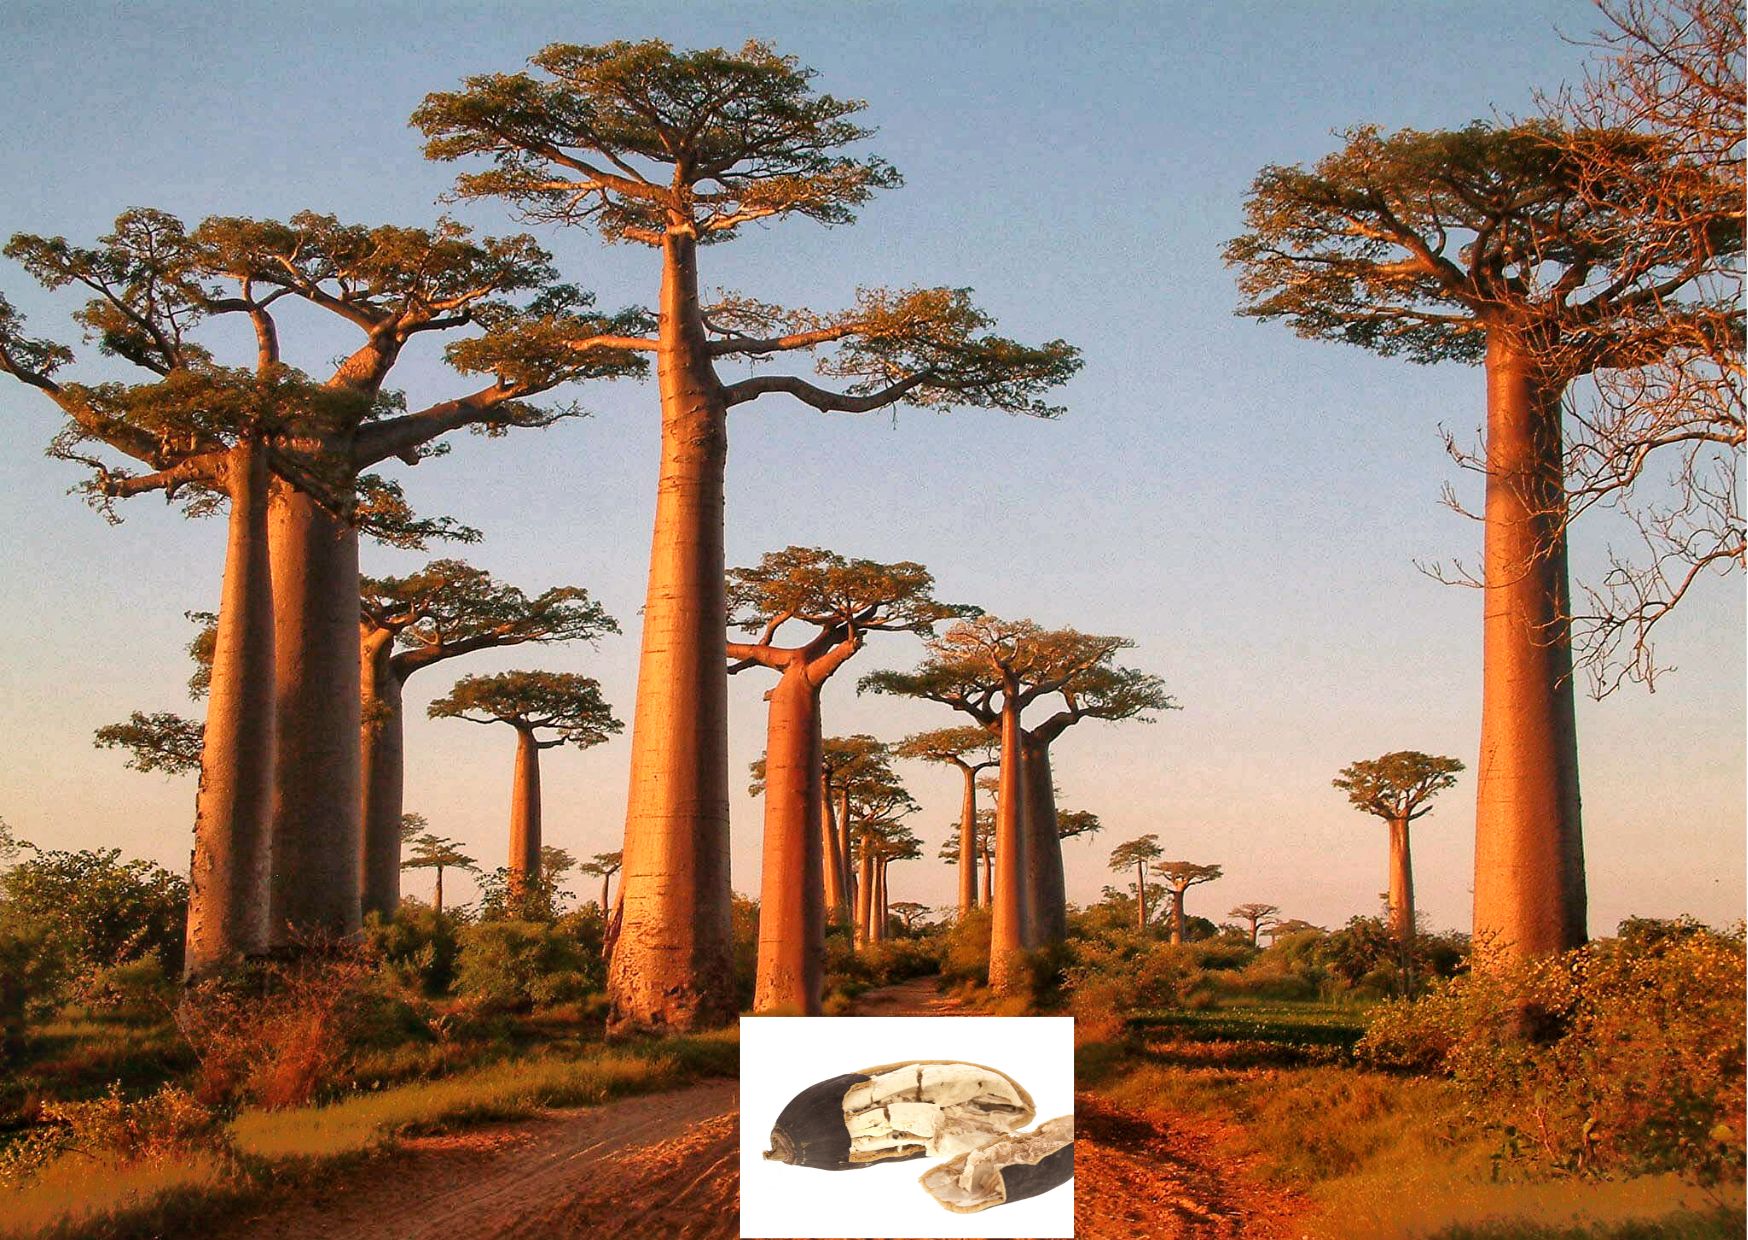 Baobob and its fruit